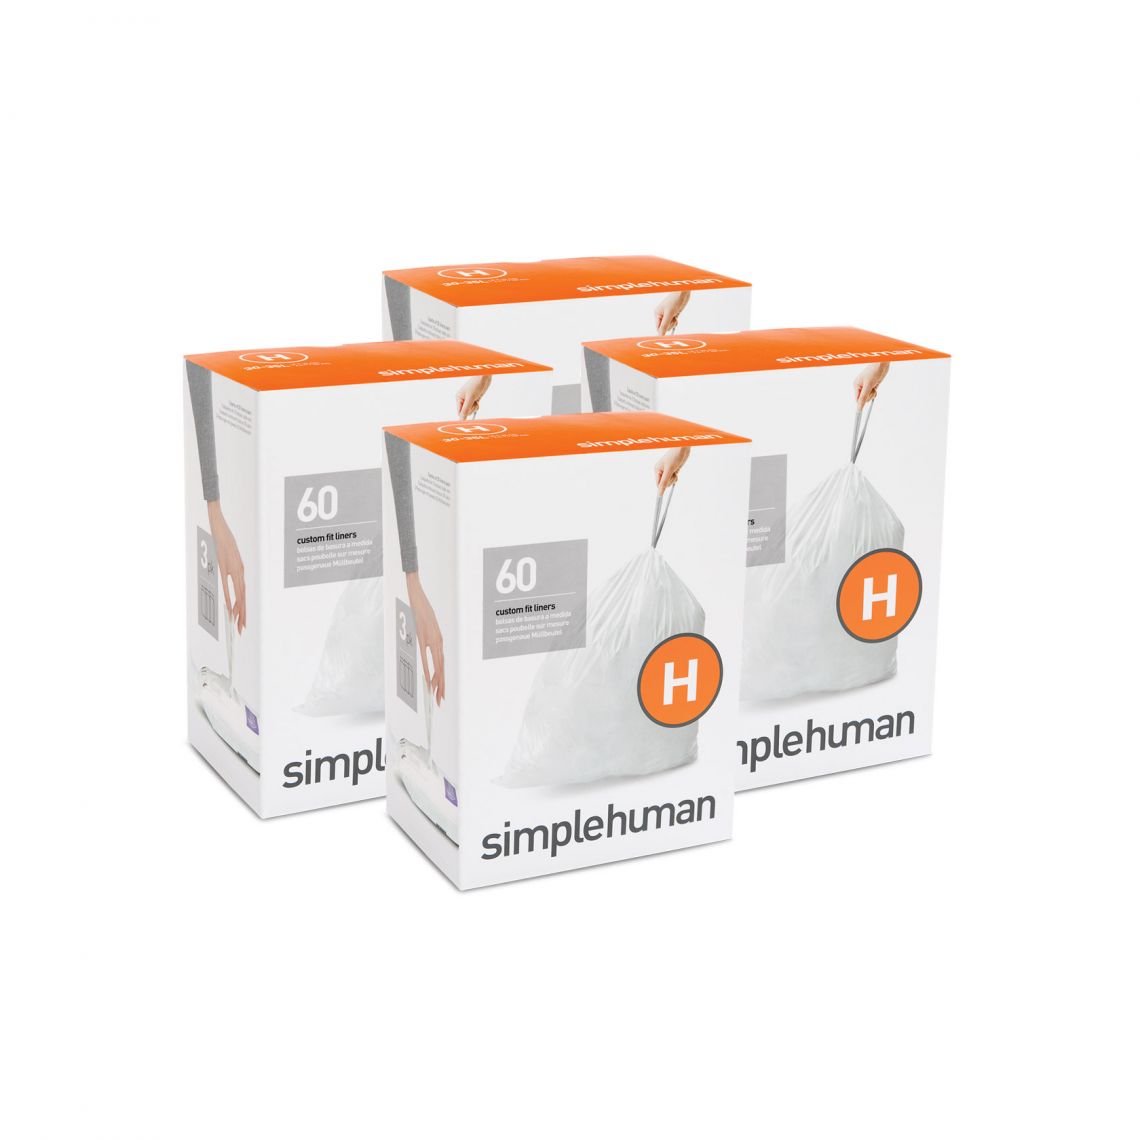 מארז 4 חבילות שקיות אשפה (H) דגם Simplehuman - CW0258 - סימפליומן